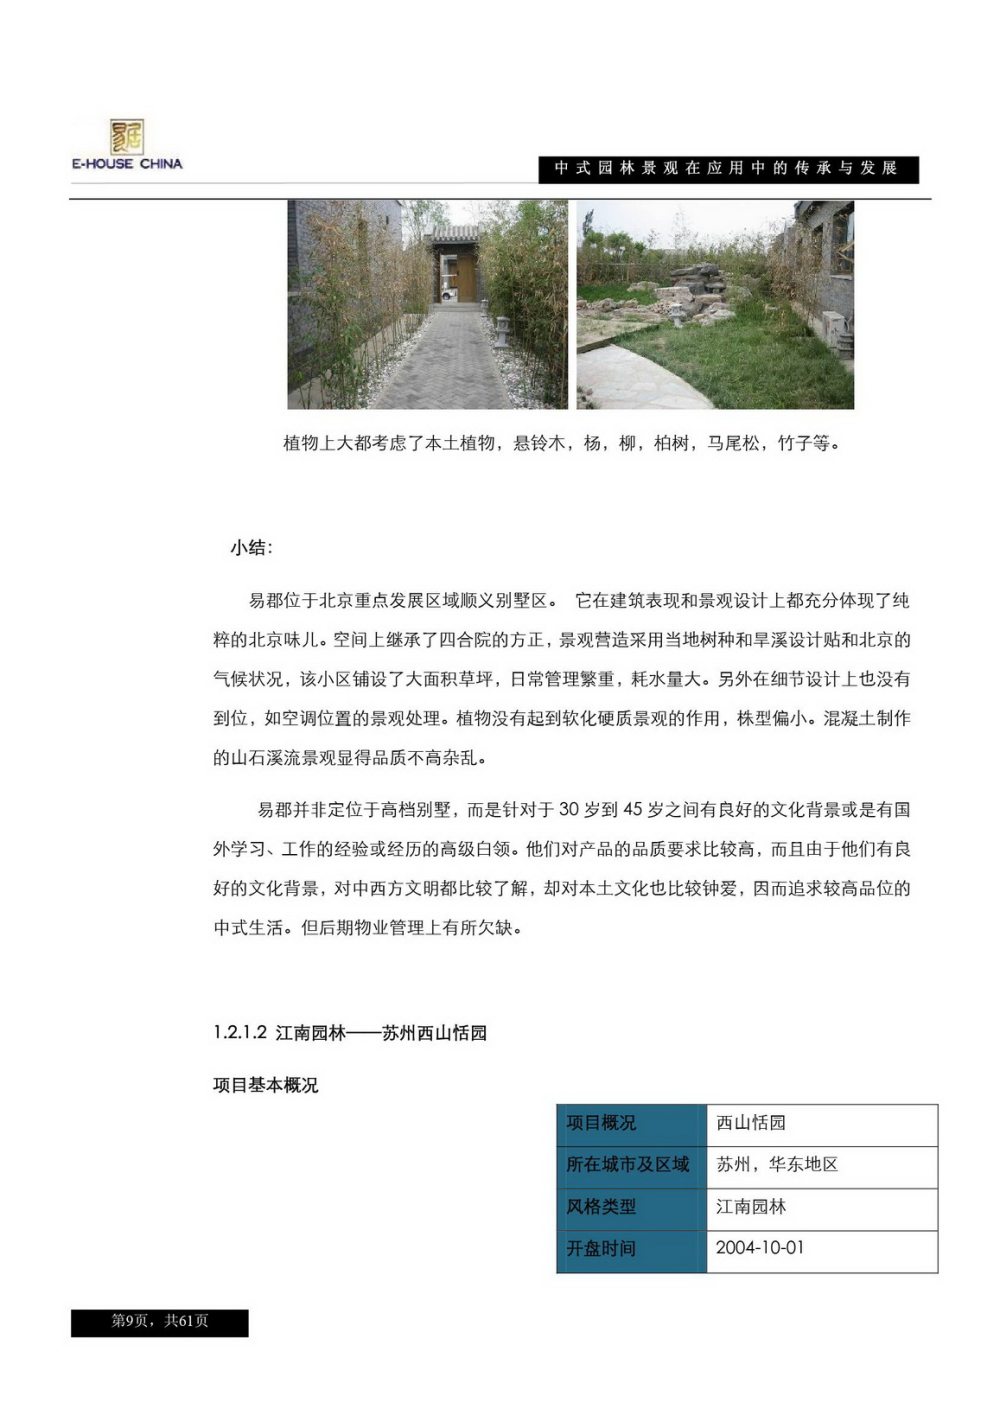 中式园林的传承与发展_页面_09.jpg